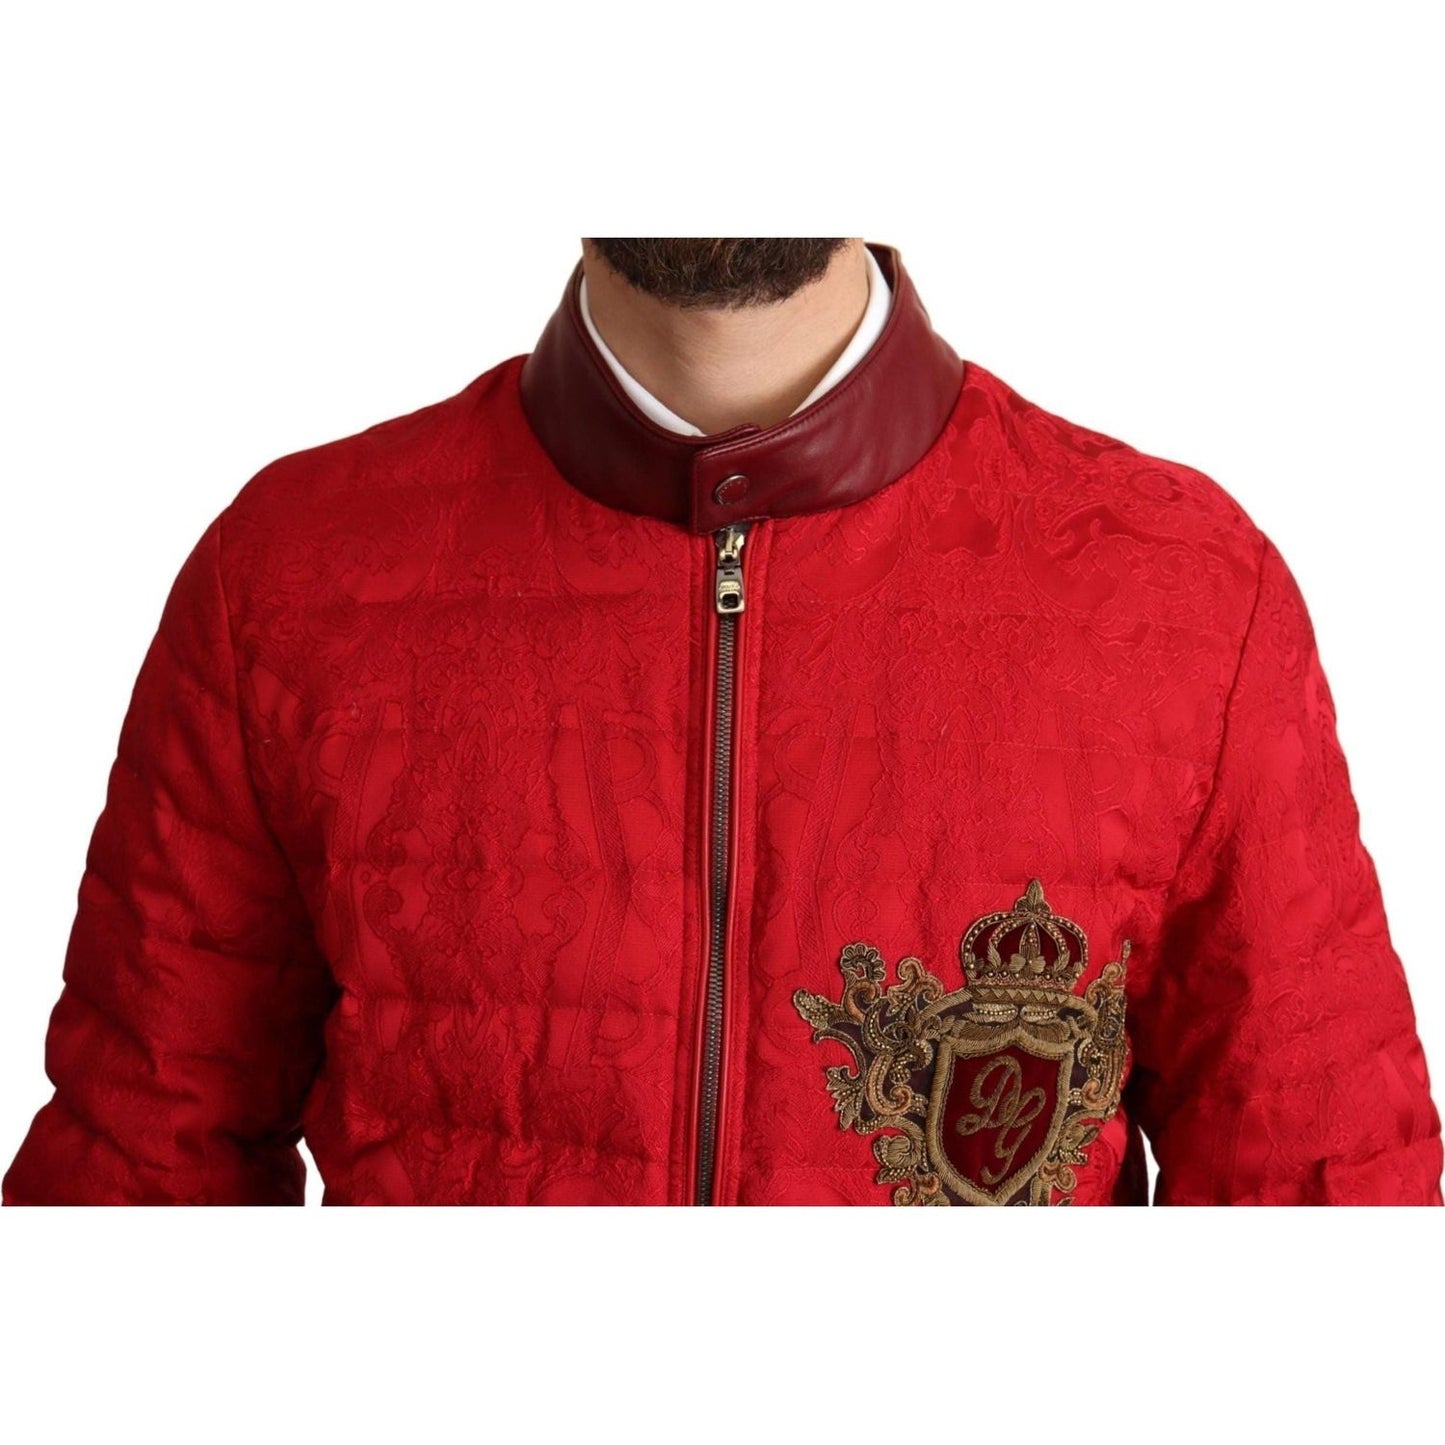 Dolce & Gabbana Red and Gold Bomber Designer Jacket red-brocade-bomber-gold-crown-logo-coat-jacket